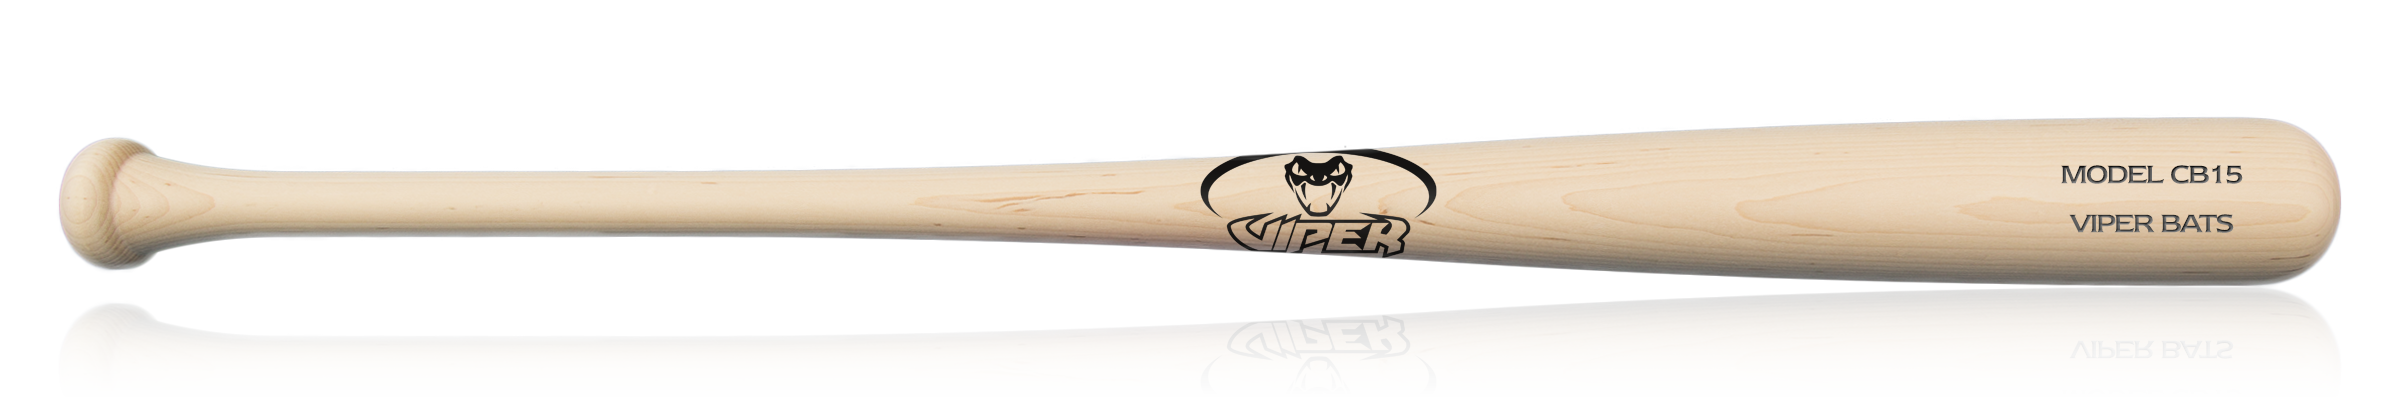 cb15 wood bat